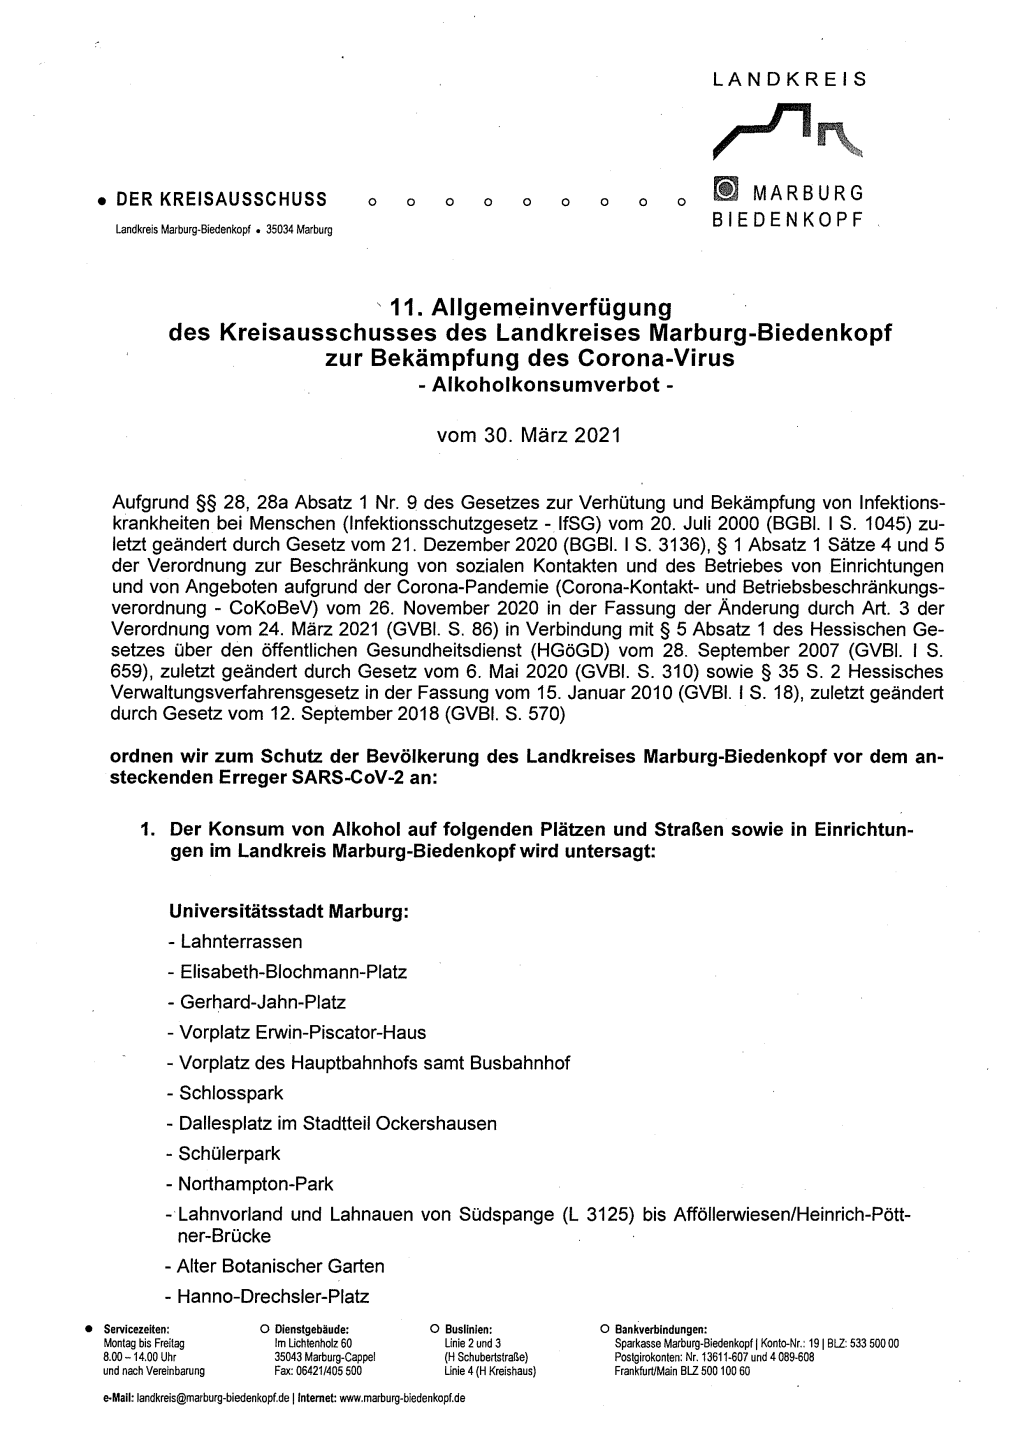 11. Allgemeinverfügung Des Kreisausschusses Des Landkreises Marburg-Biedenkopf Zur Bekämpfung Des Corona-Virus - Alkoholkonsumverbot